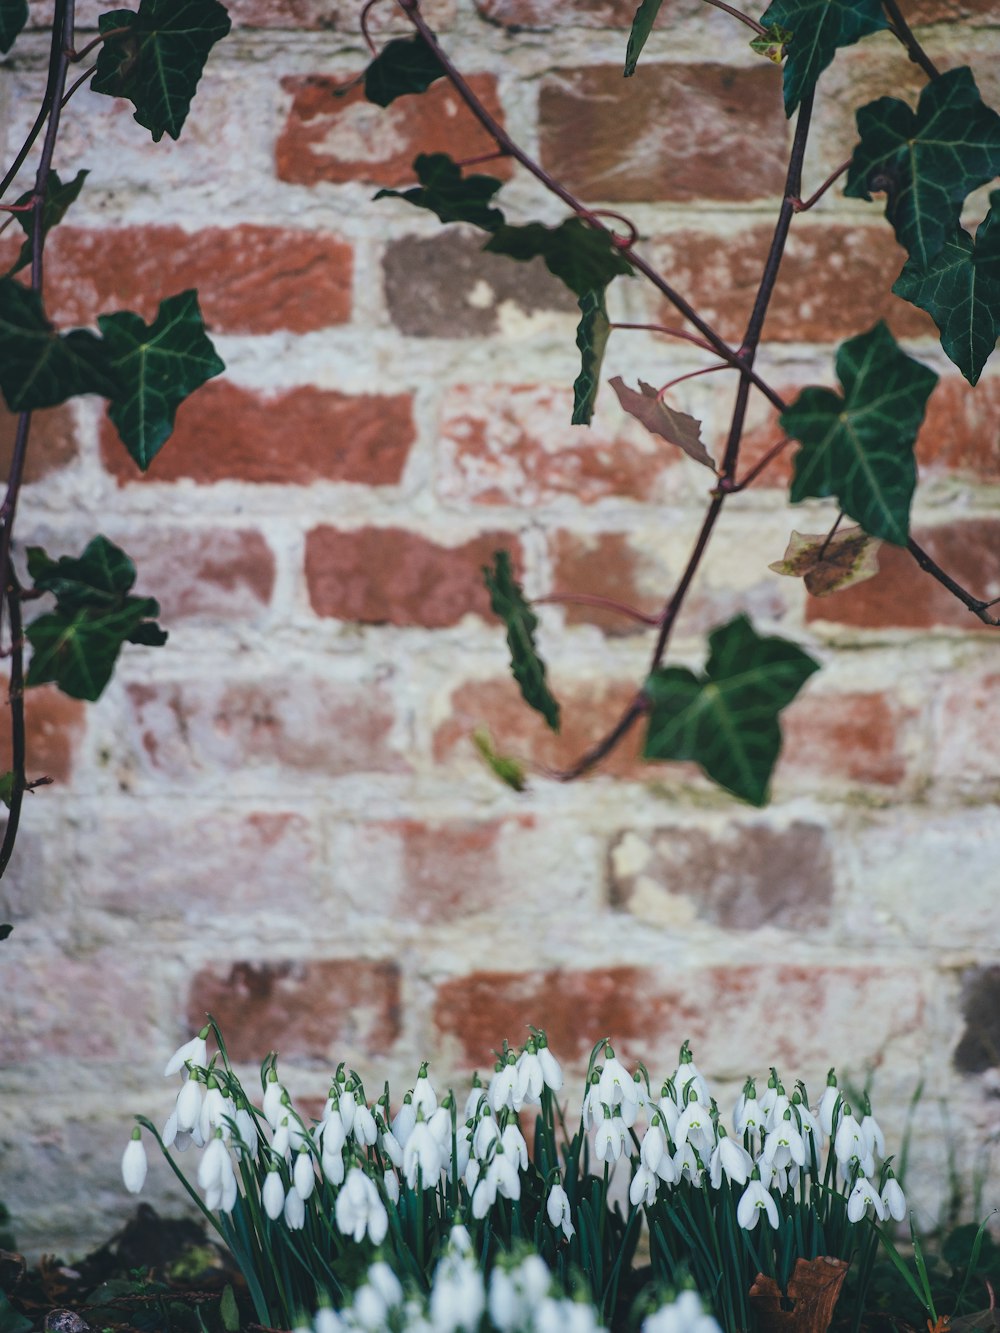 녹색 잎이 달린 덩굴 식물과 흰색 튤립 선택적 초점 사진